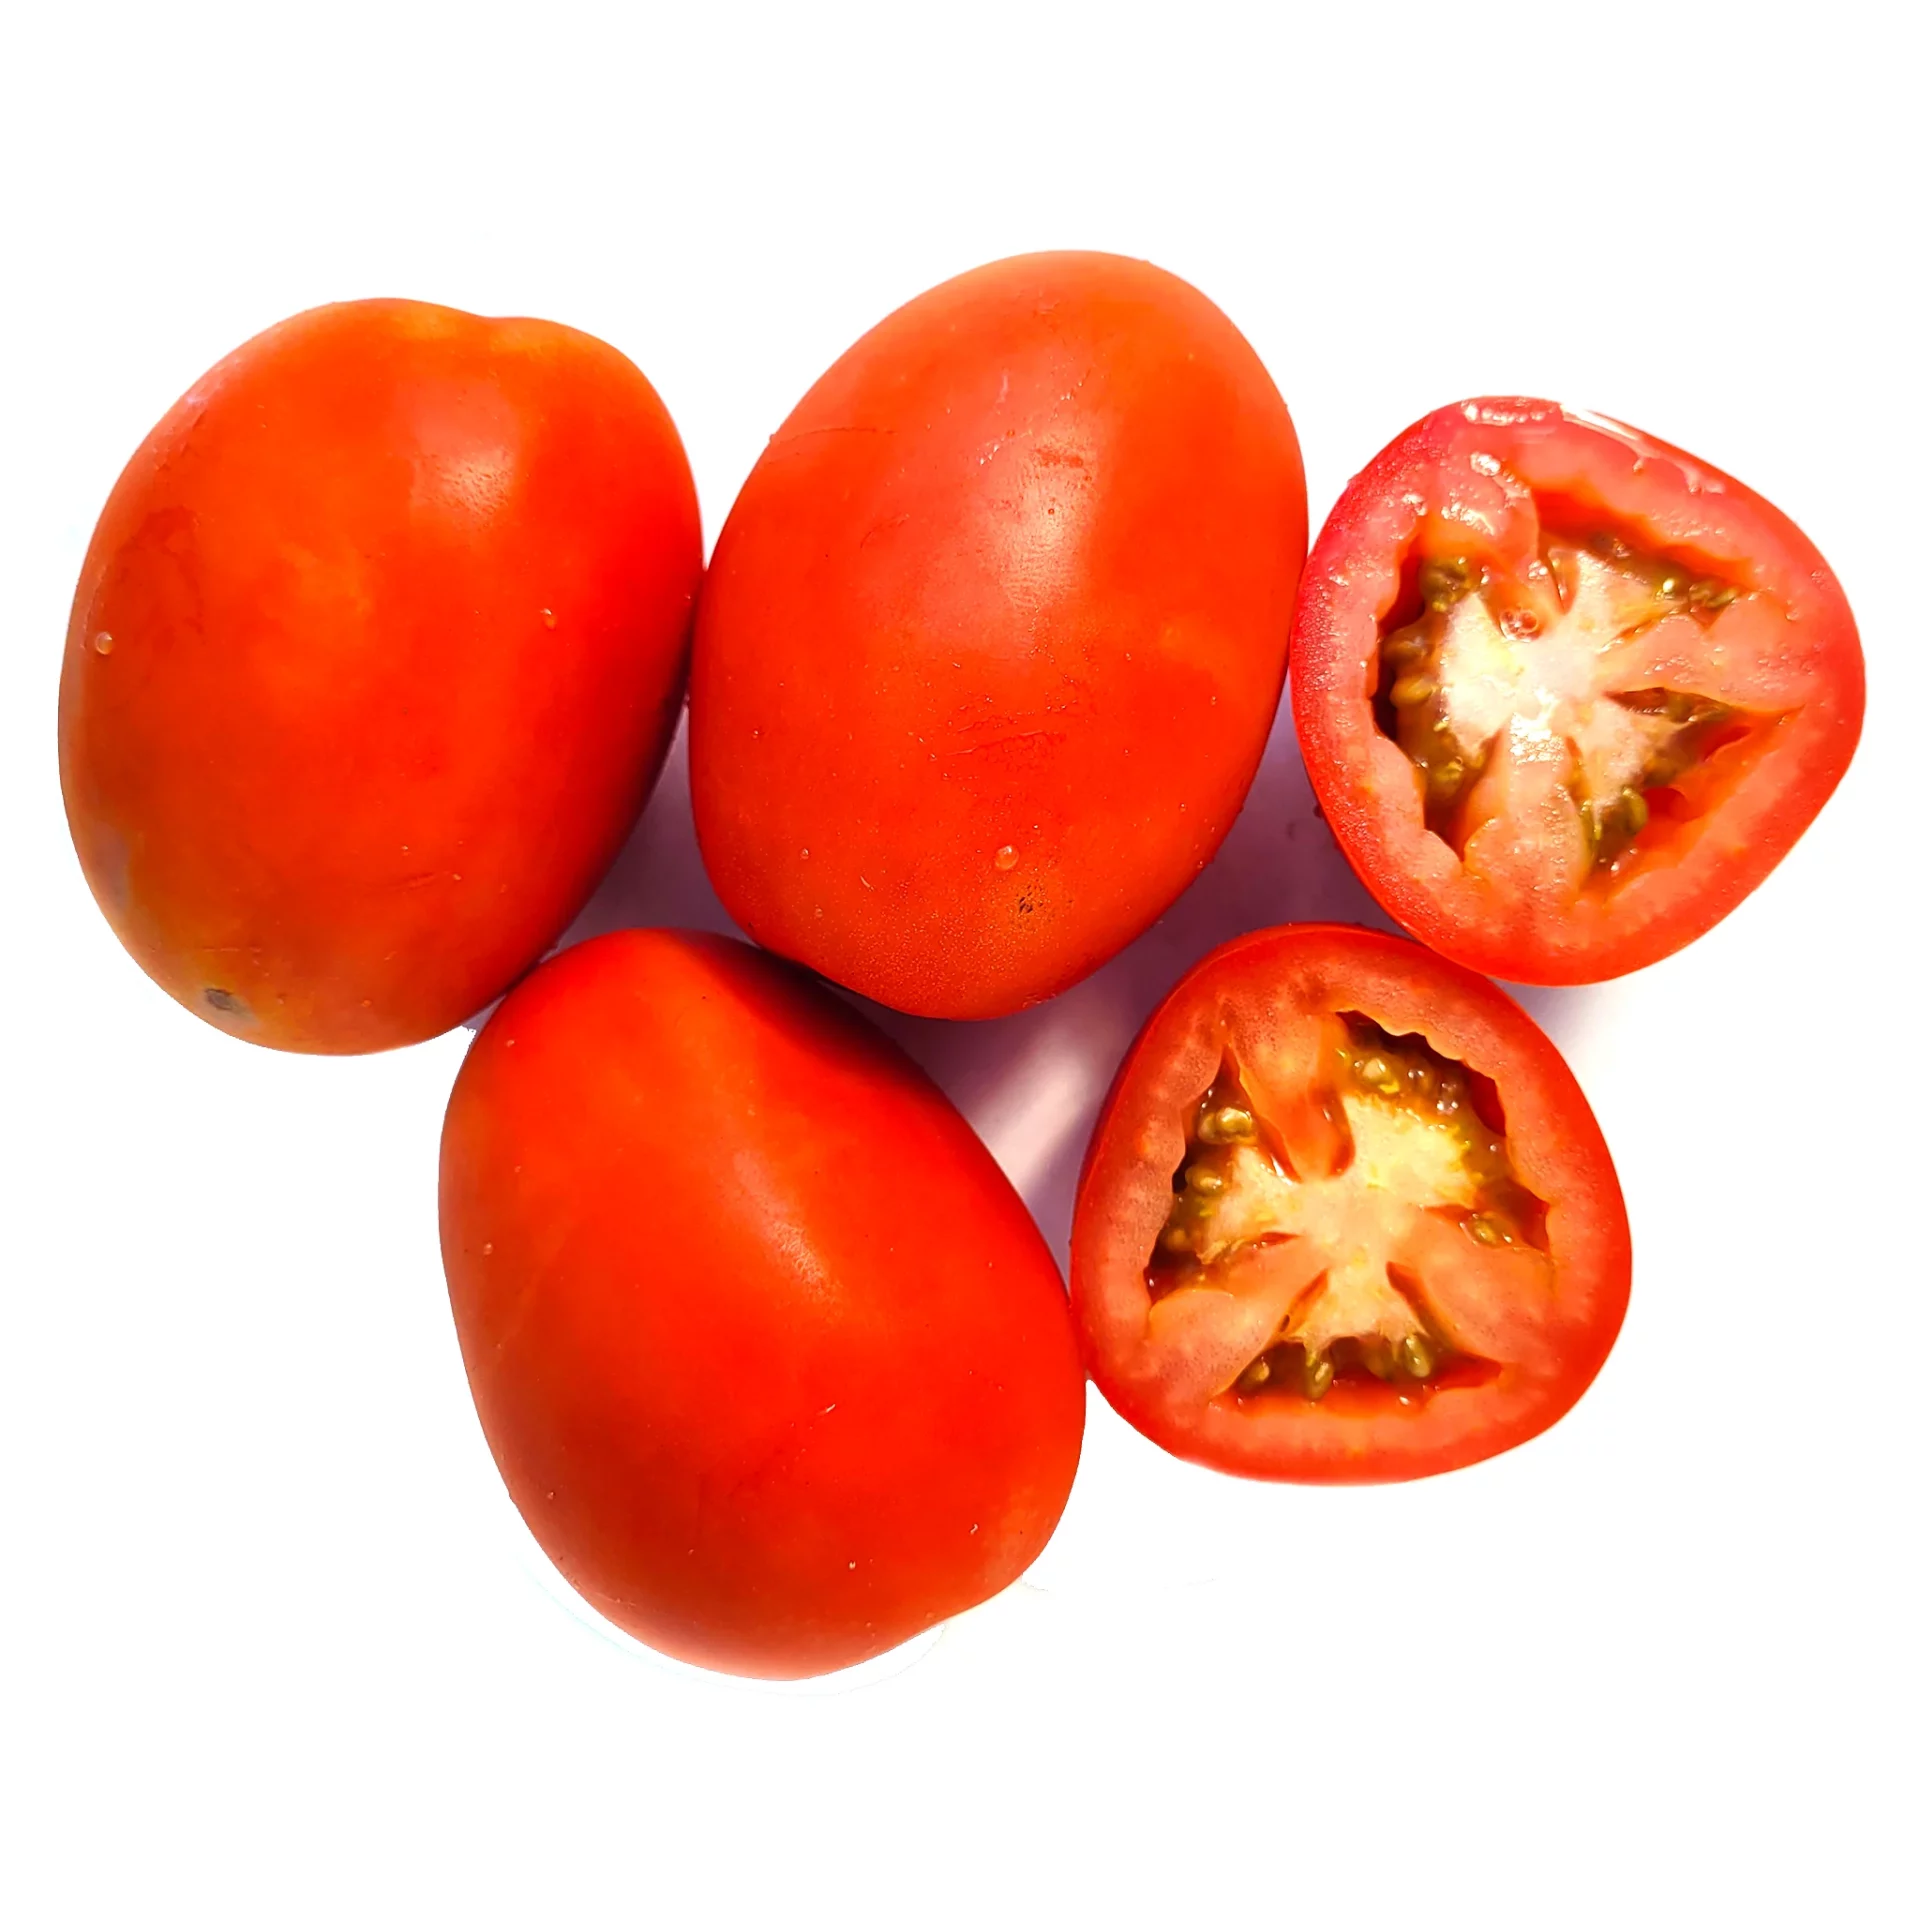 plum tomatoes substitute, substitute for plum tomatoes, substitute plum tomatoes, plum tomato substitute